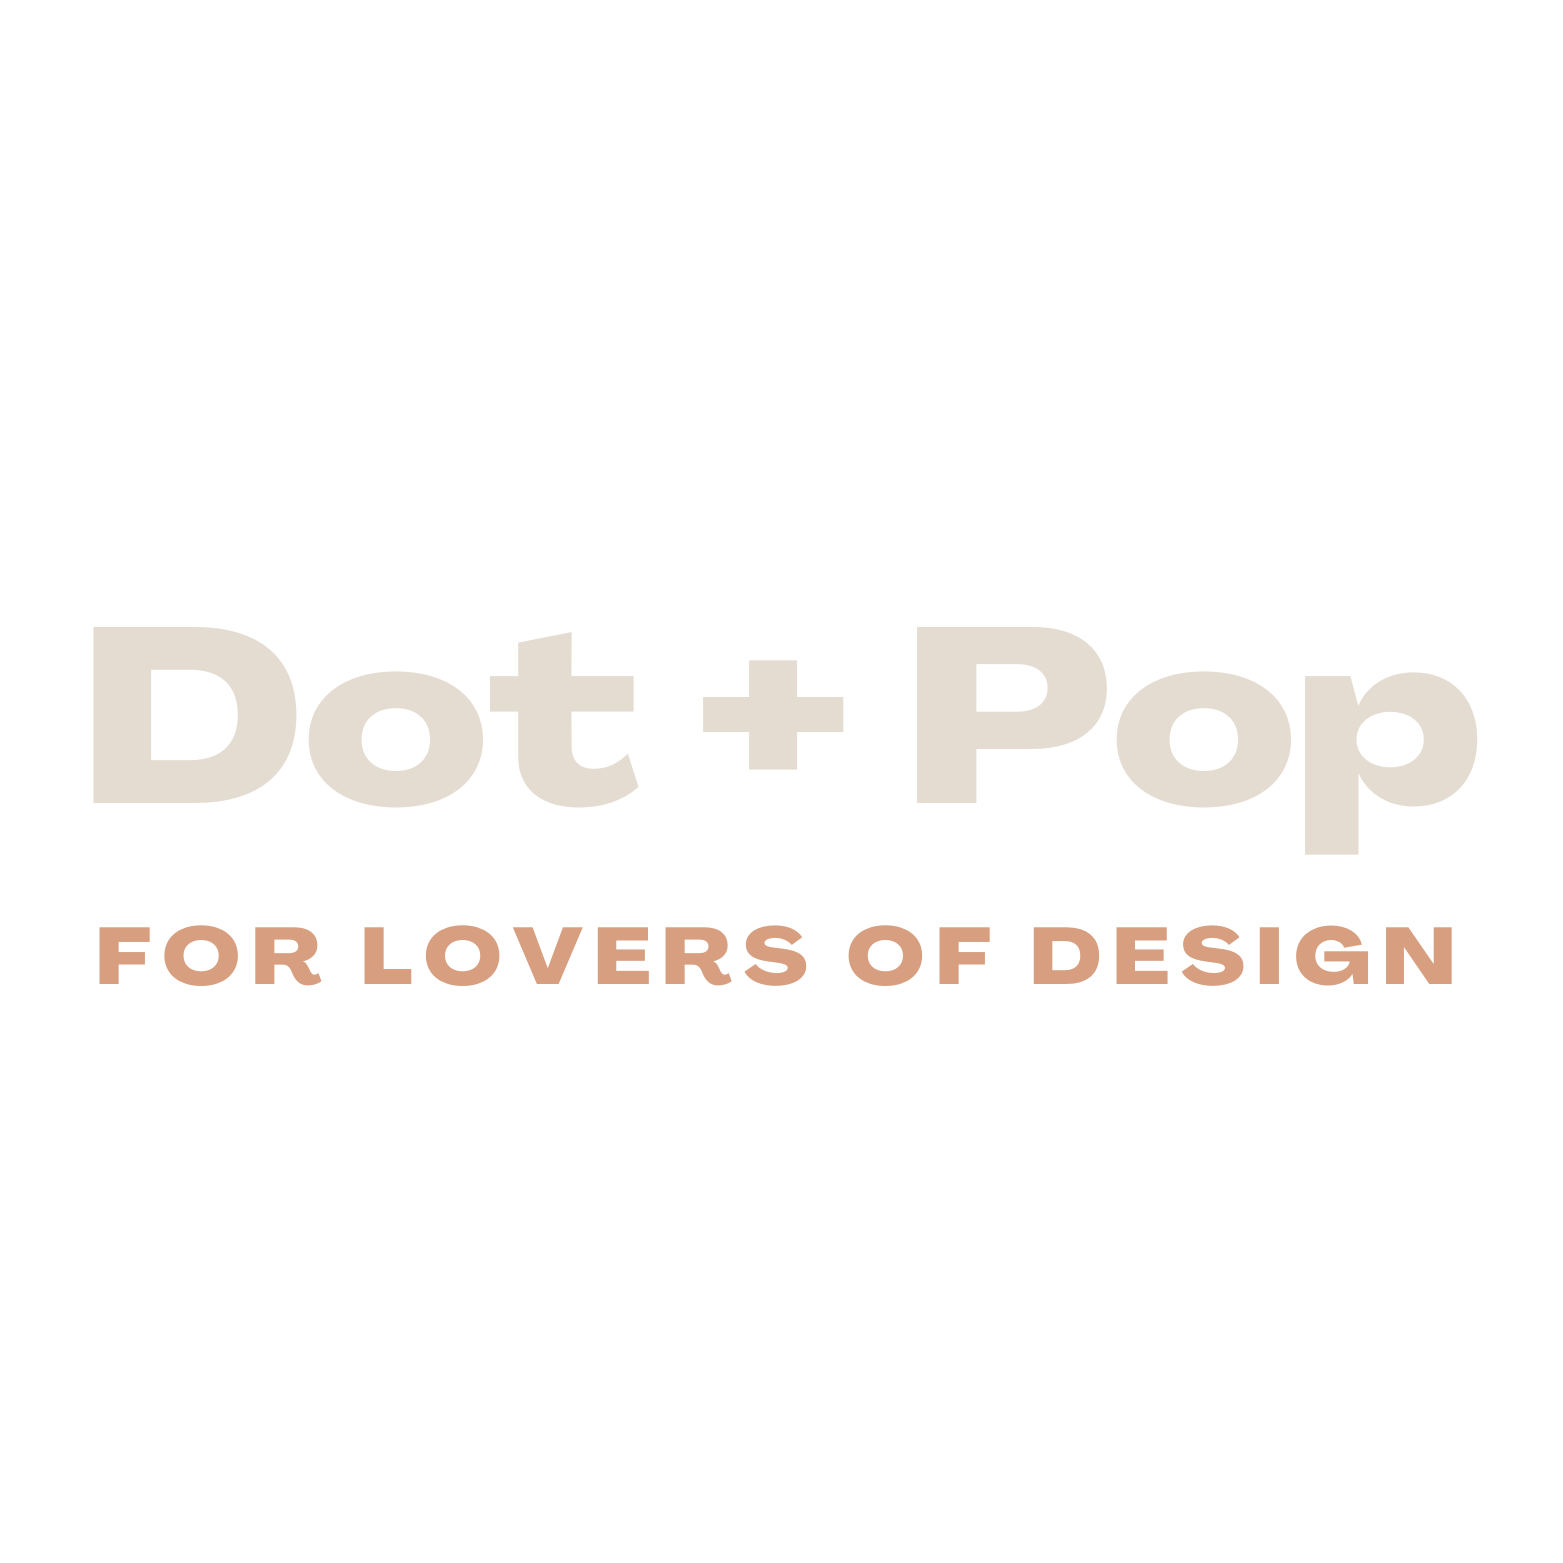 DOT + POP